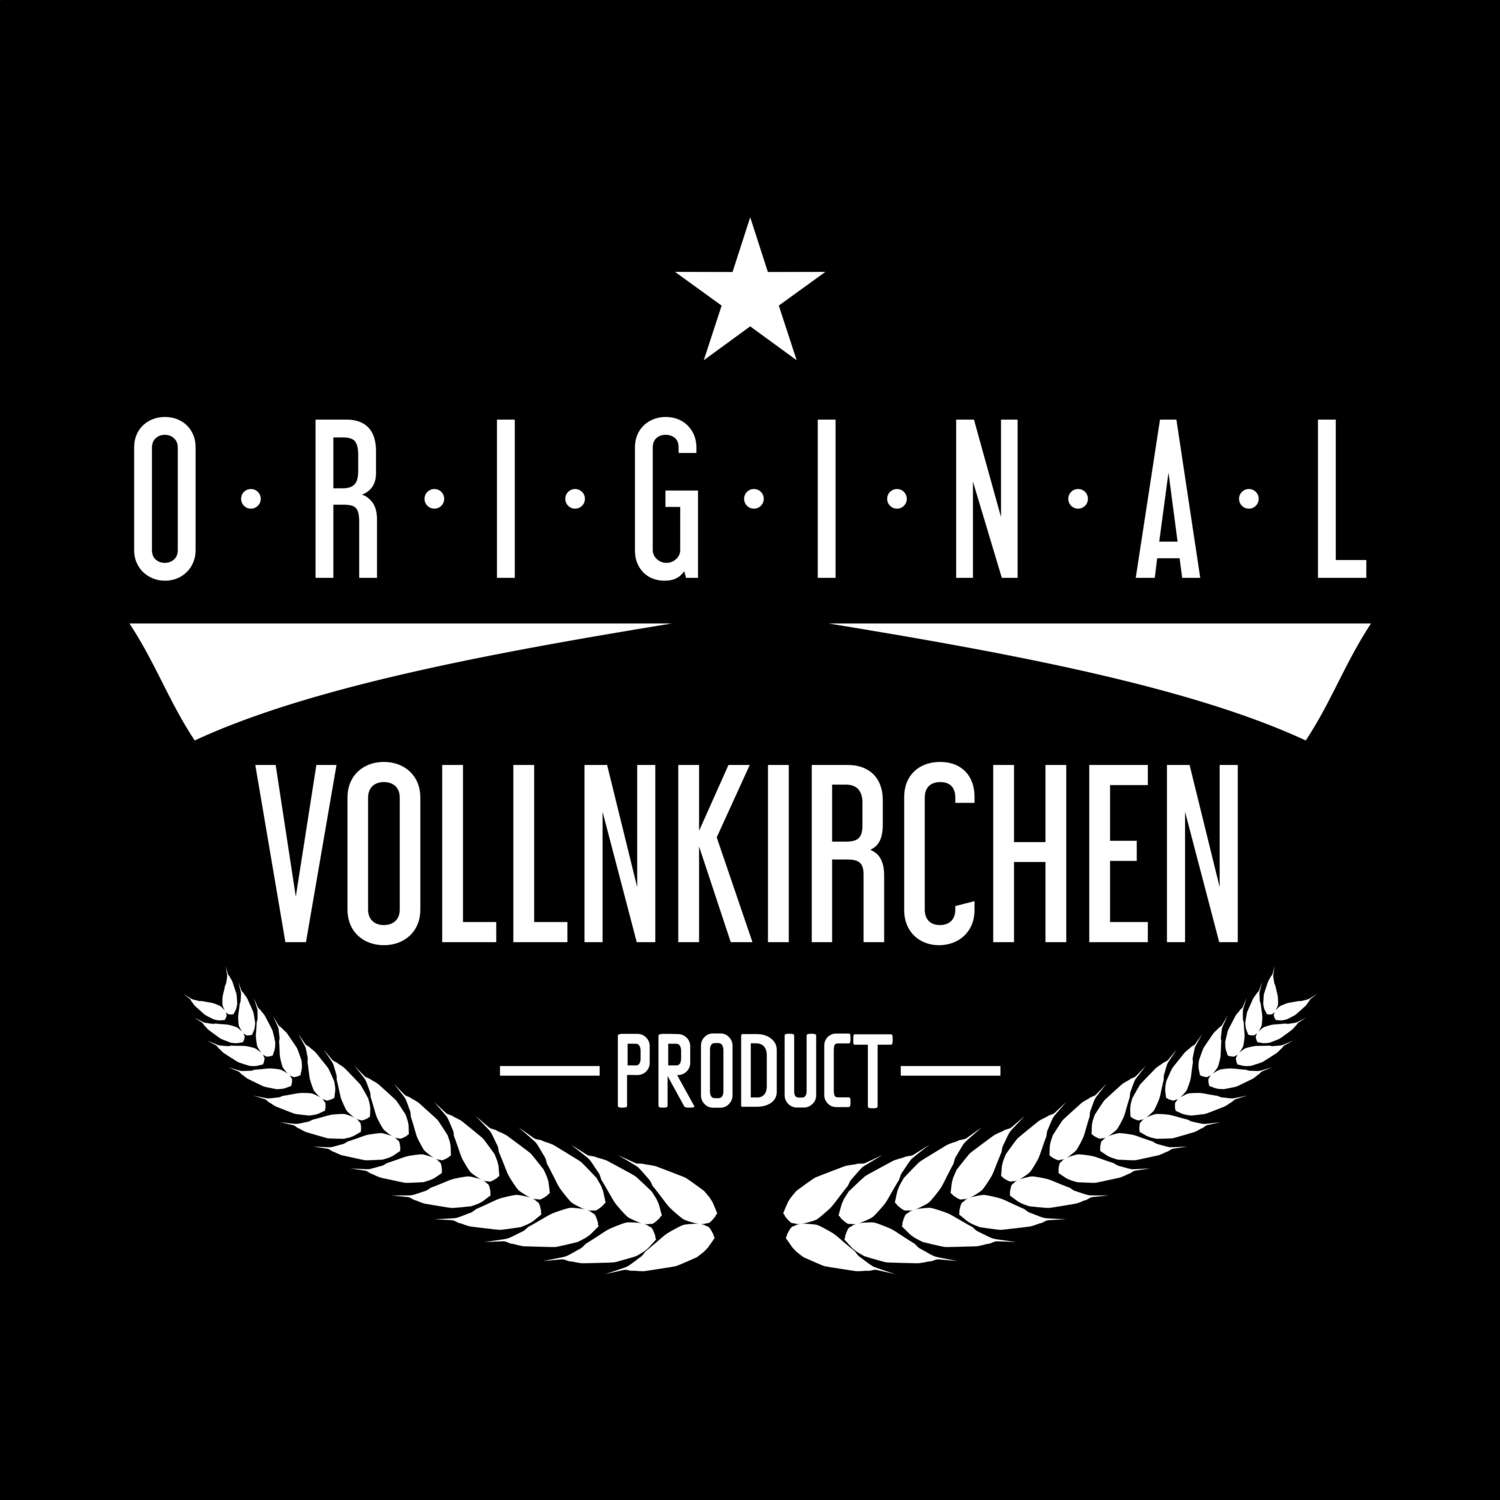 Vollnkirchen T-Shirt »Original Product«